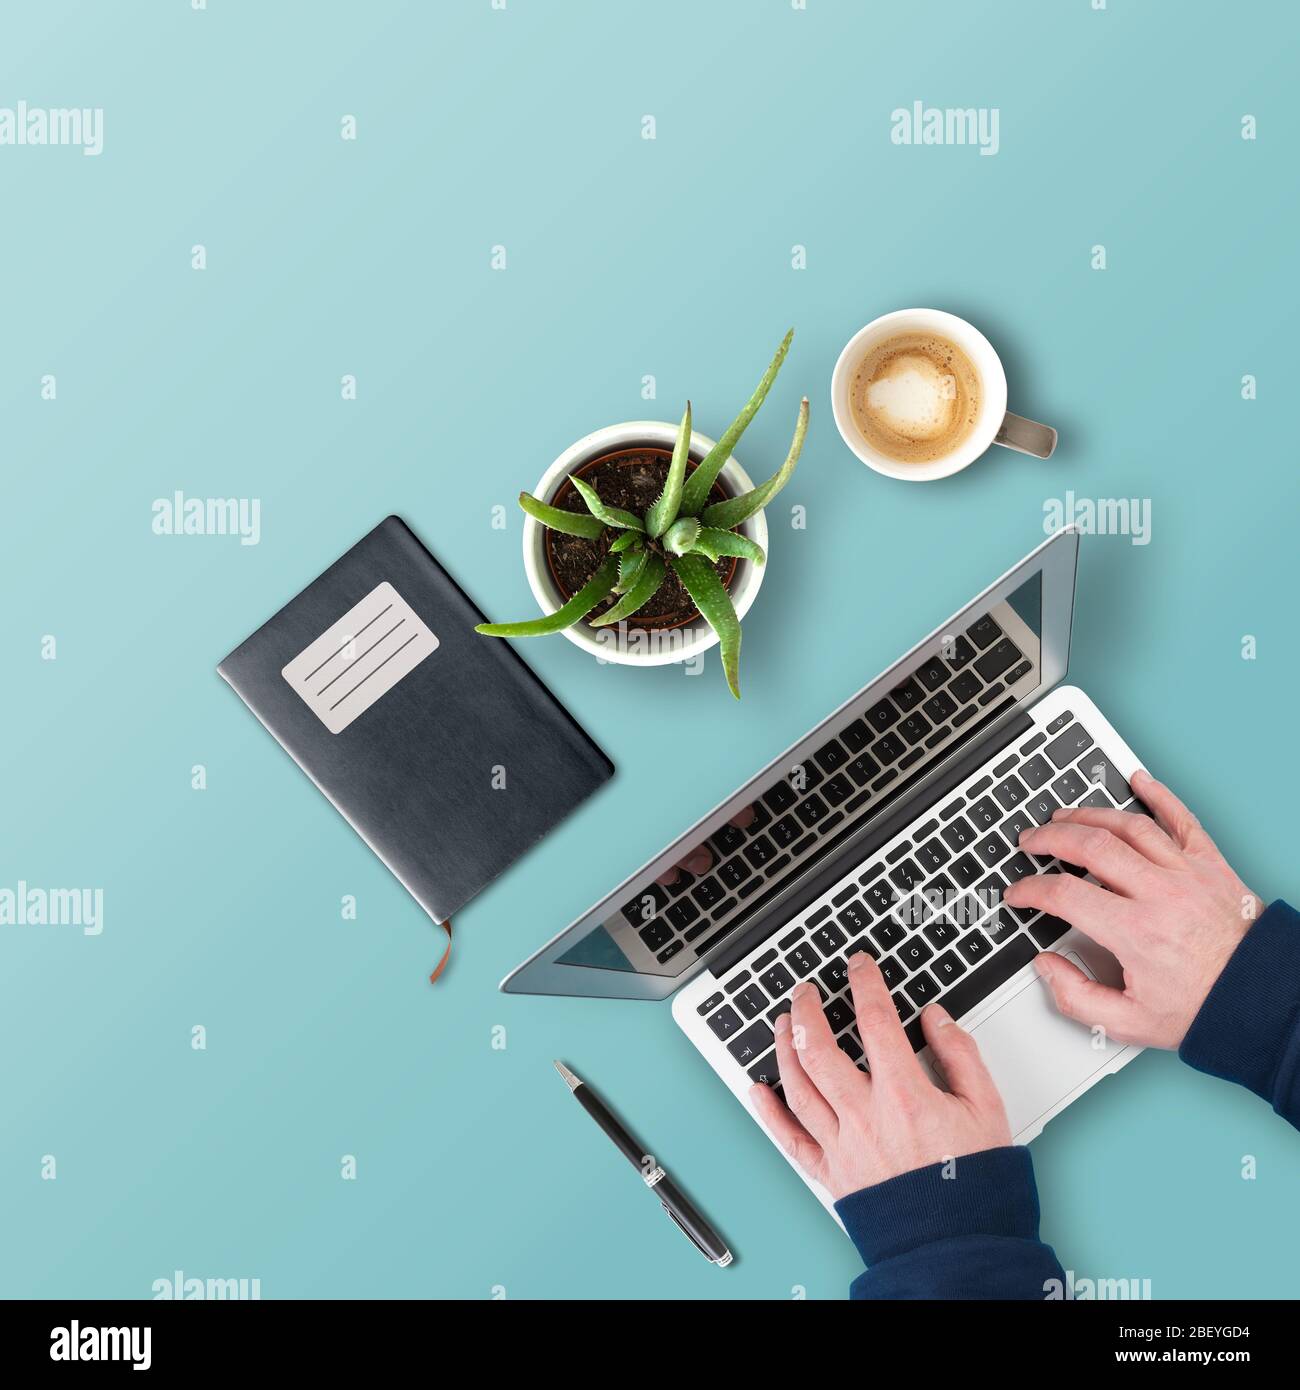 Arbeiten zu Hause und Home Office-Konzept, Draufsicht der Person, die auf Laptop-Computer auf dem Schreibtisch mit Topfpflanze, Notizblock und Kaffeebecher tippen Stockfoto